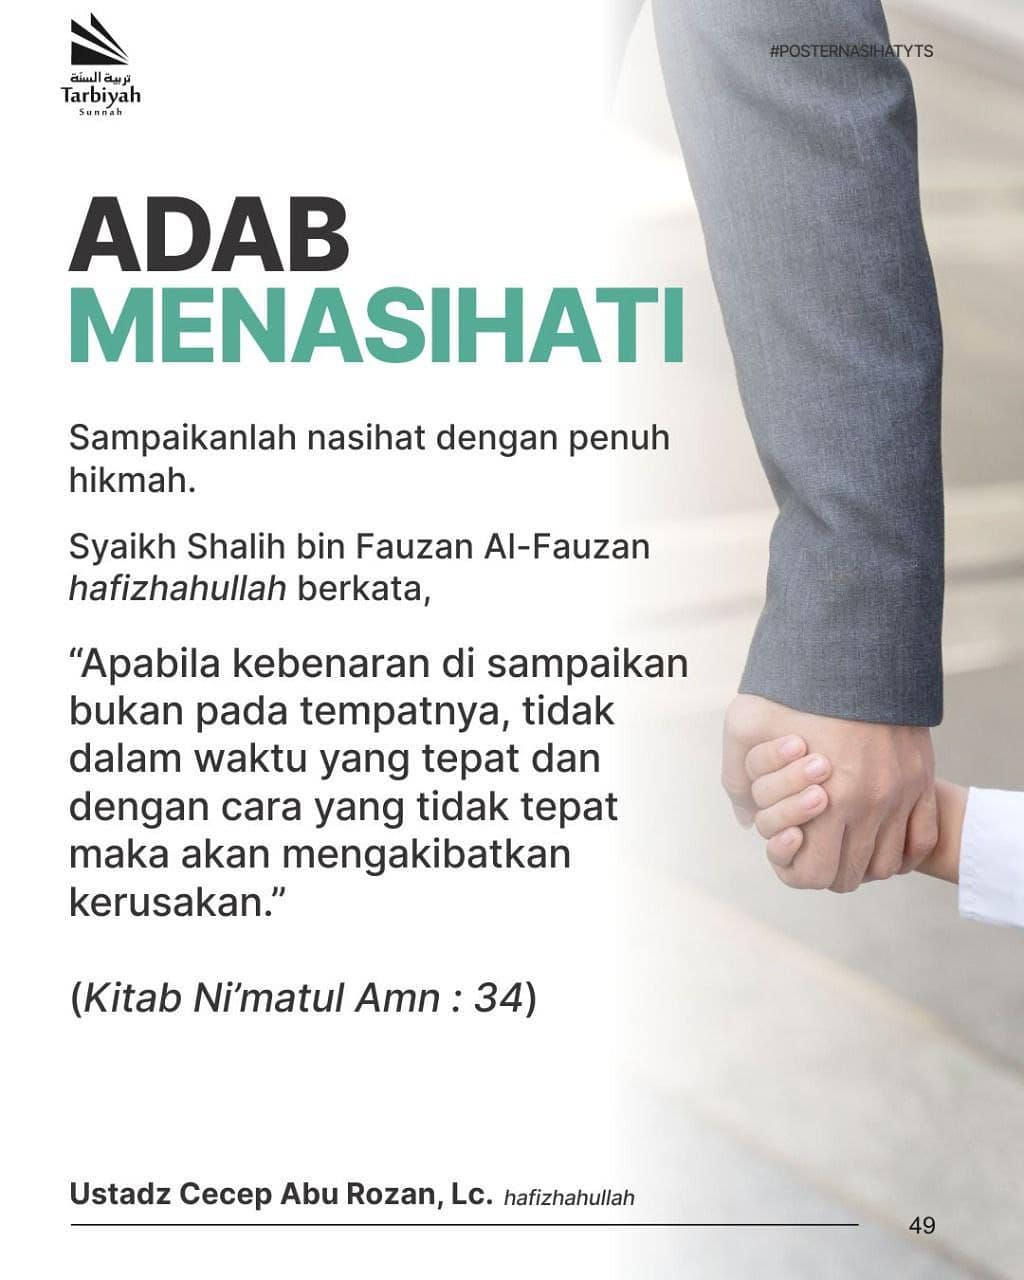 Adab Menasihati – Poster Nasihat